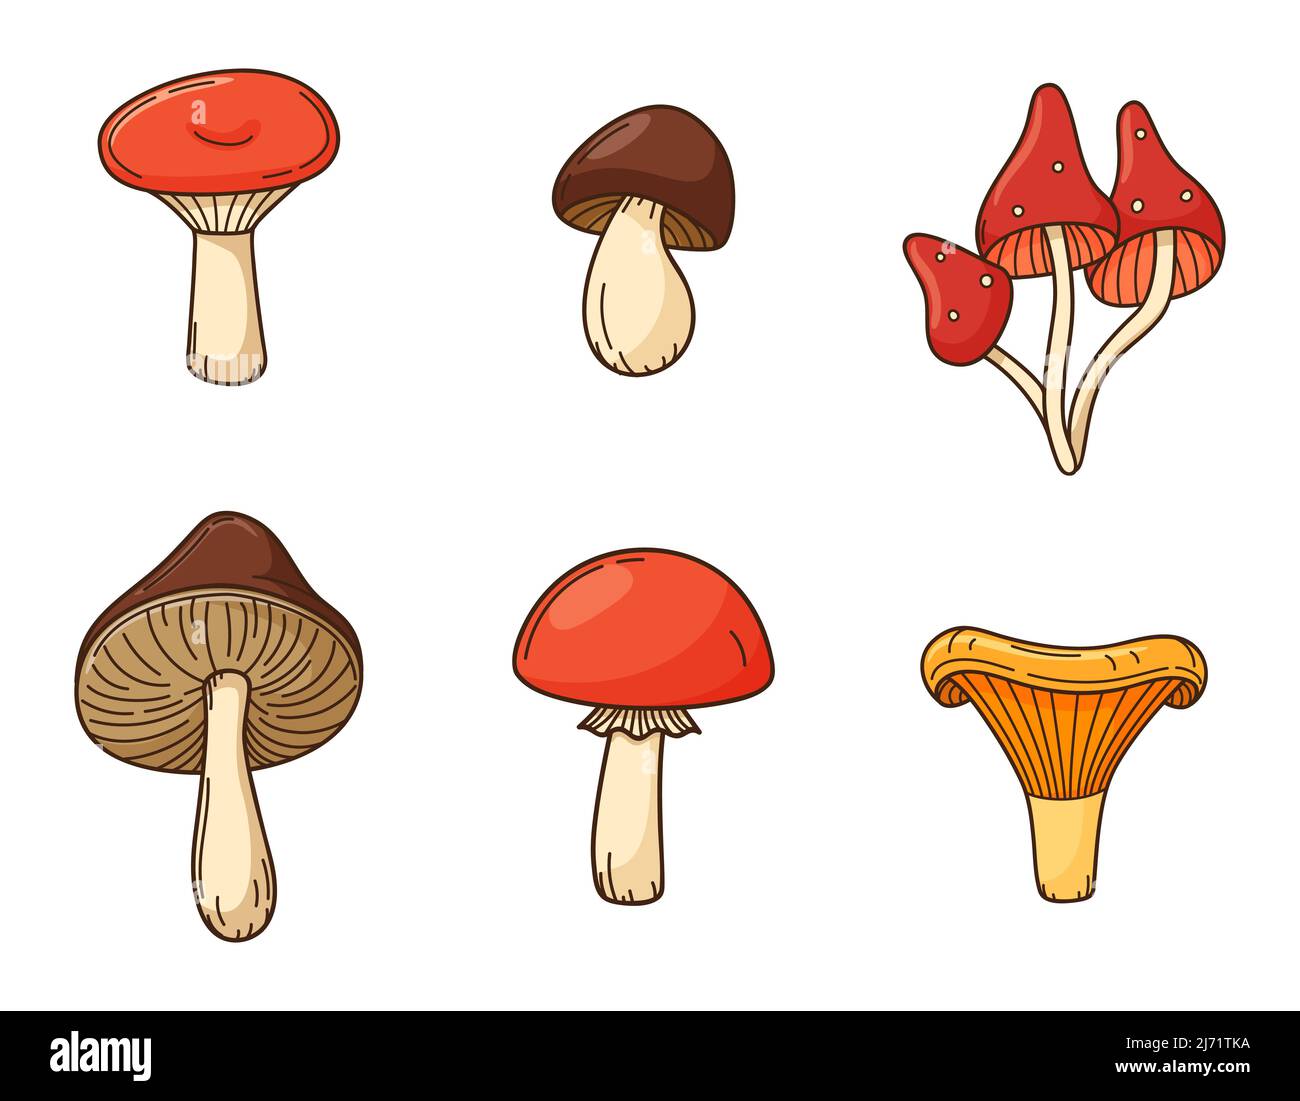 Una serie di doodles colorati di funghi. Funghi commestibili autunnali. Elementi con tratto e riempimento. Immagine vettoriale a colori isolata su sfondo bianco Illustrazione Vettoriale